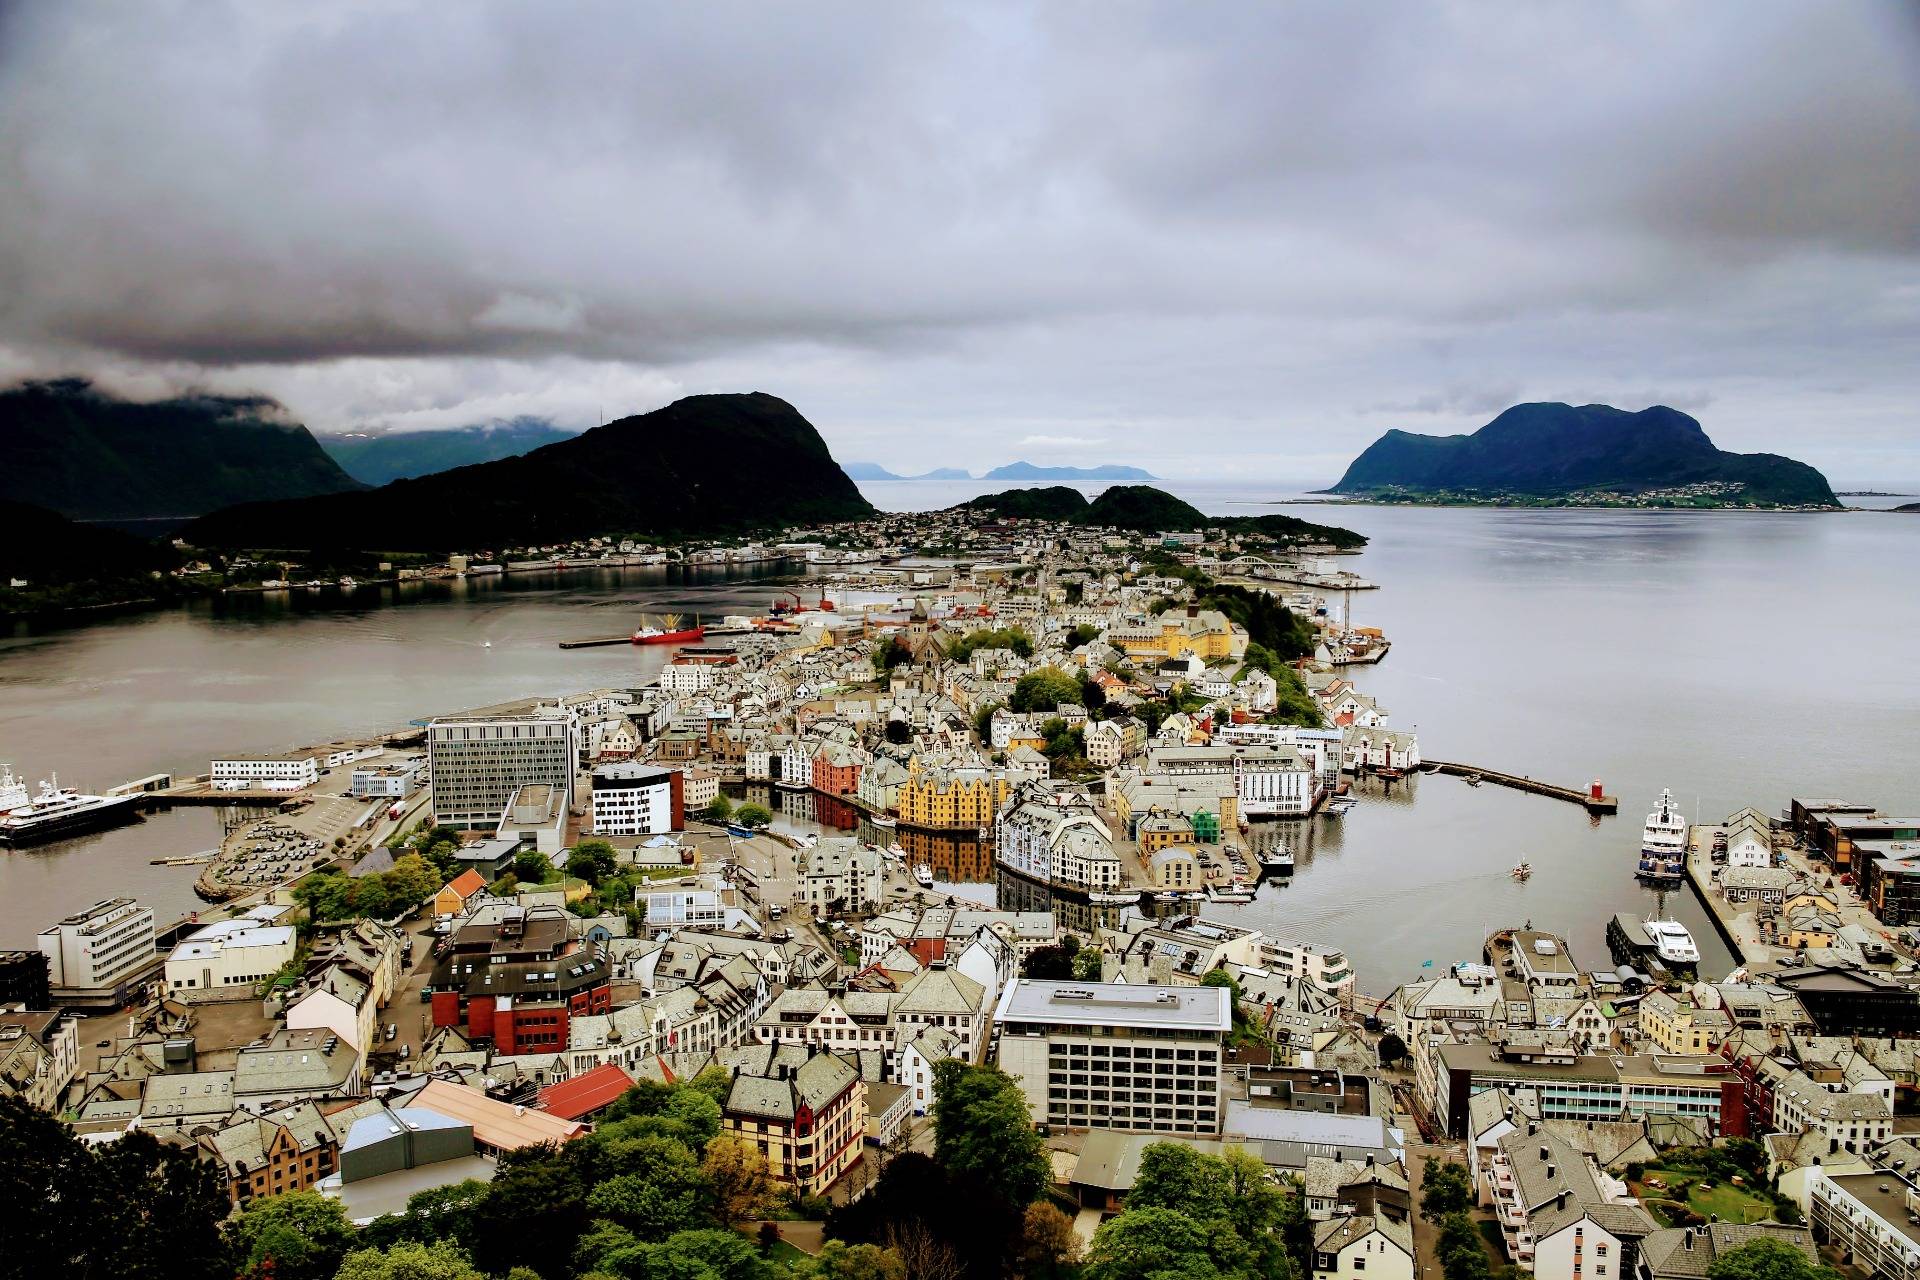 Moje zwiedzanie Norwegii - część 3 [PL] | Visiting Norway - part 3 [ENG]